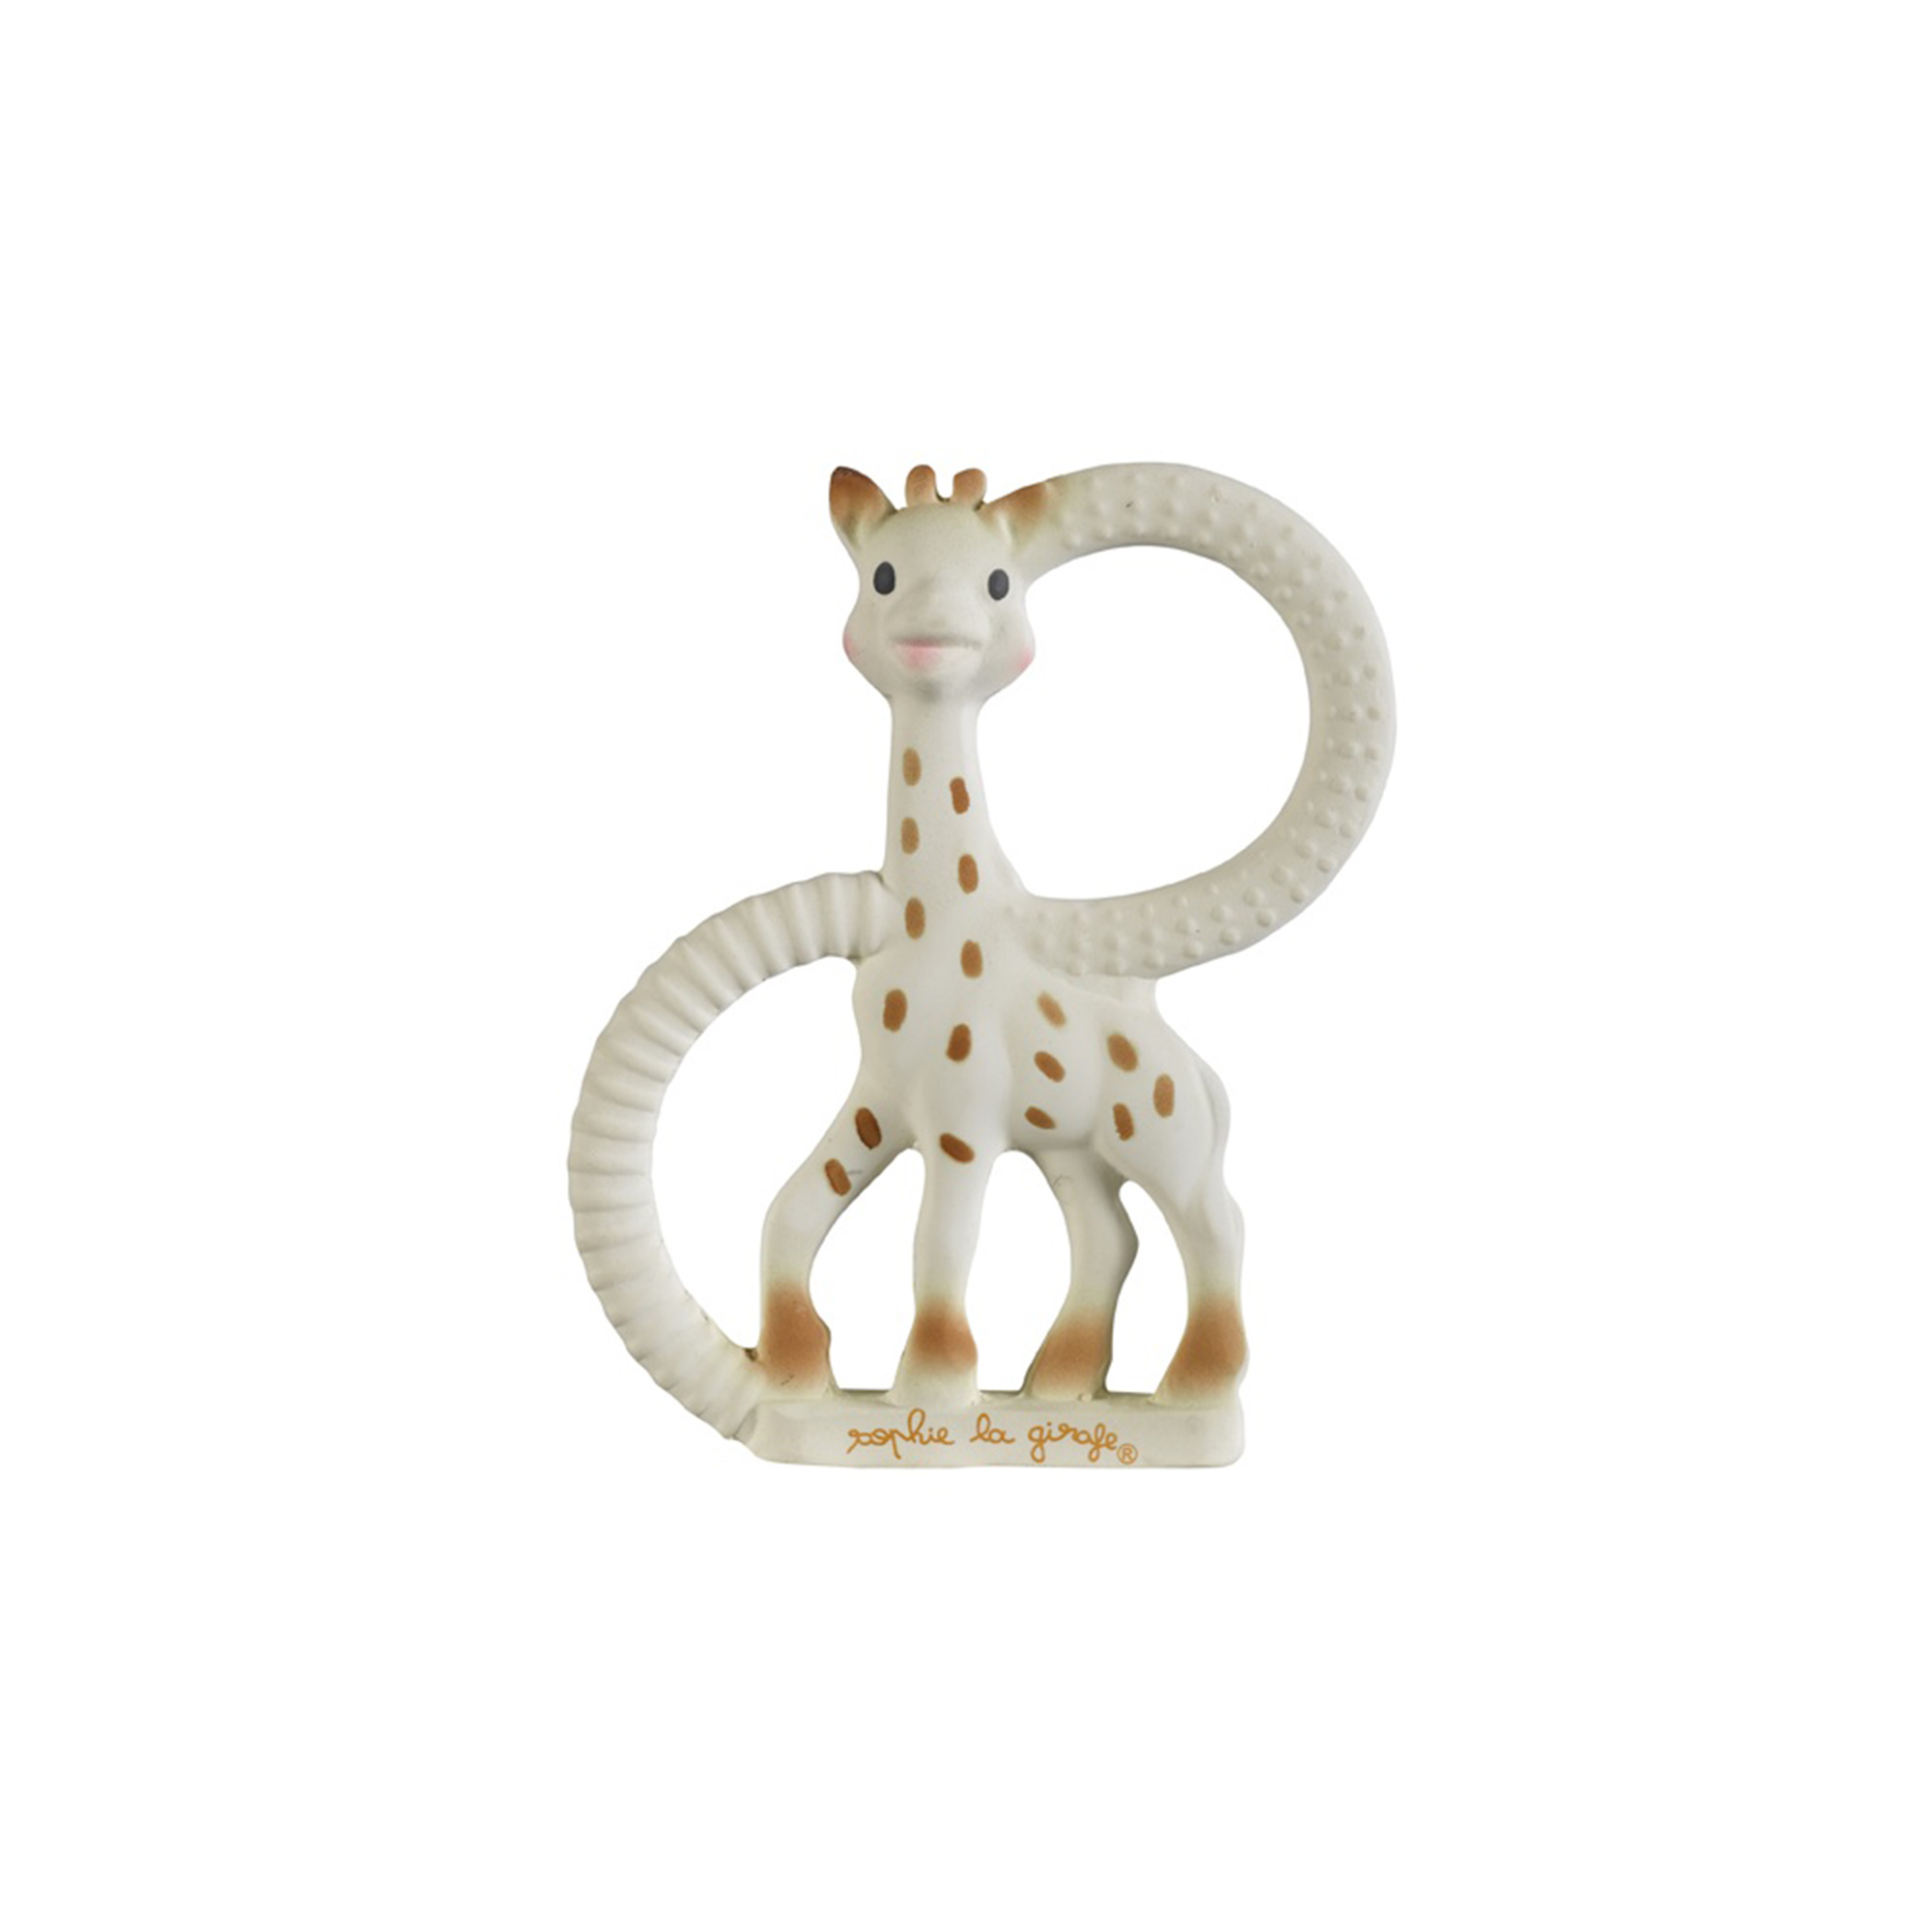 Coffret de bain Sophie la girafe de Sophie La Girafe®, Catégorie CH sans  promo : Aubert